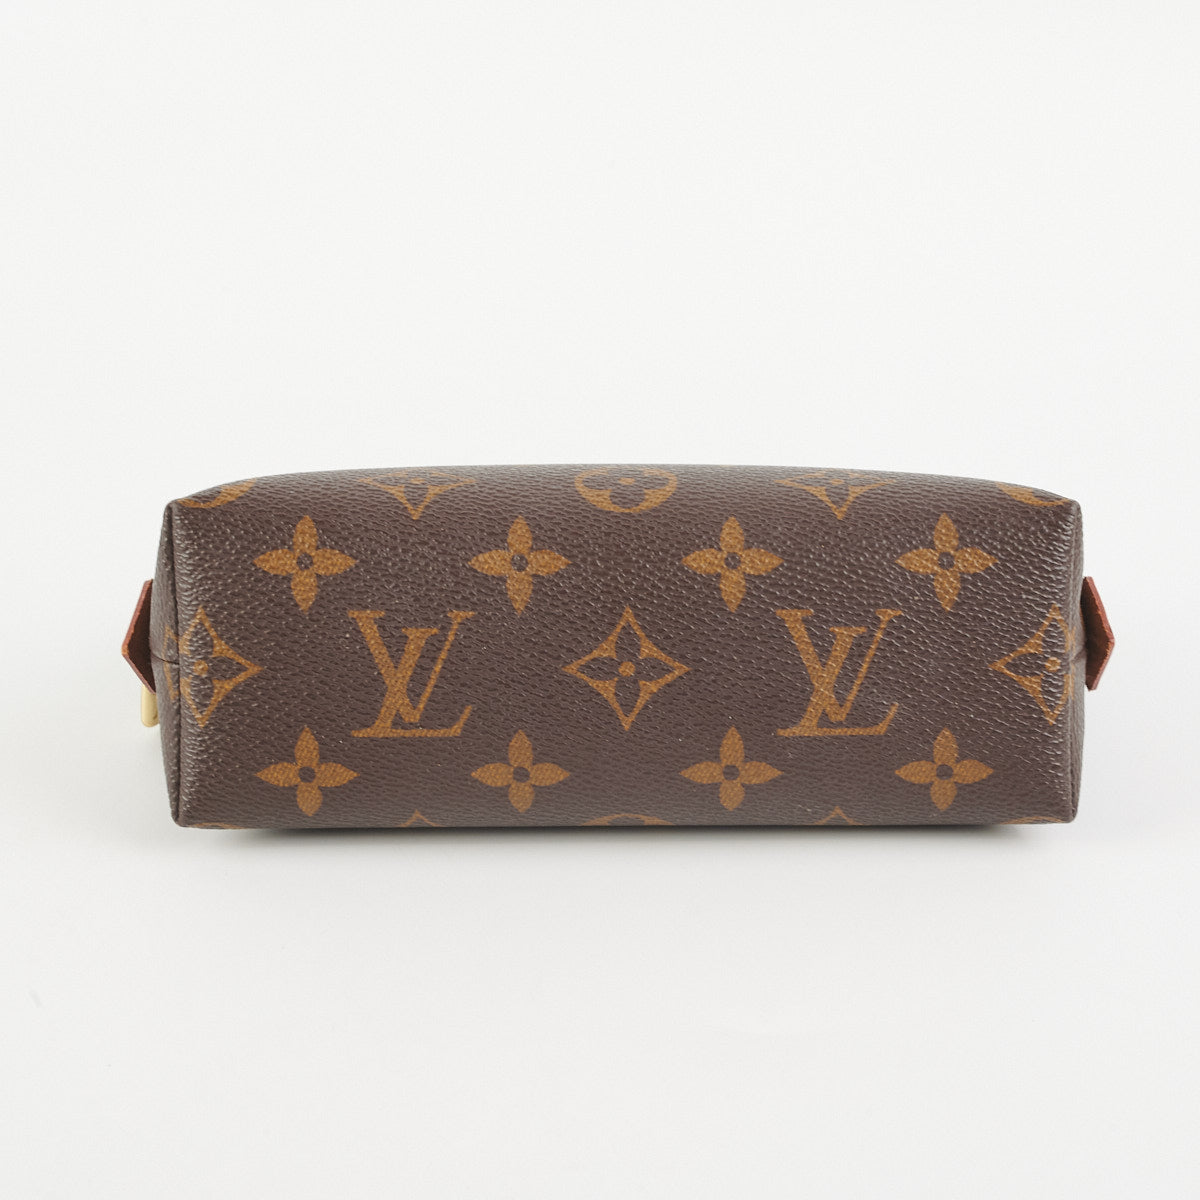 Louis Vuitton Large Vintage Cosmetic Pouch - THE PURSE AFFAIR